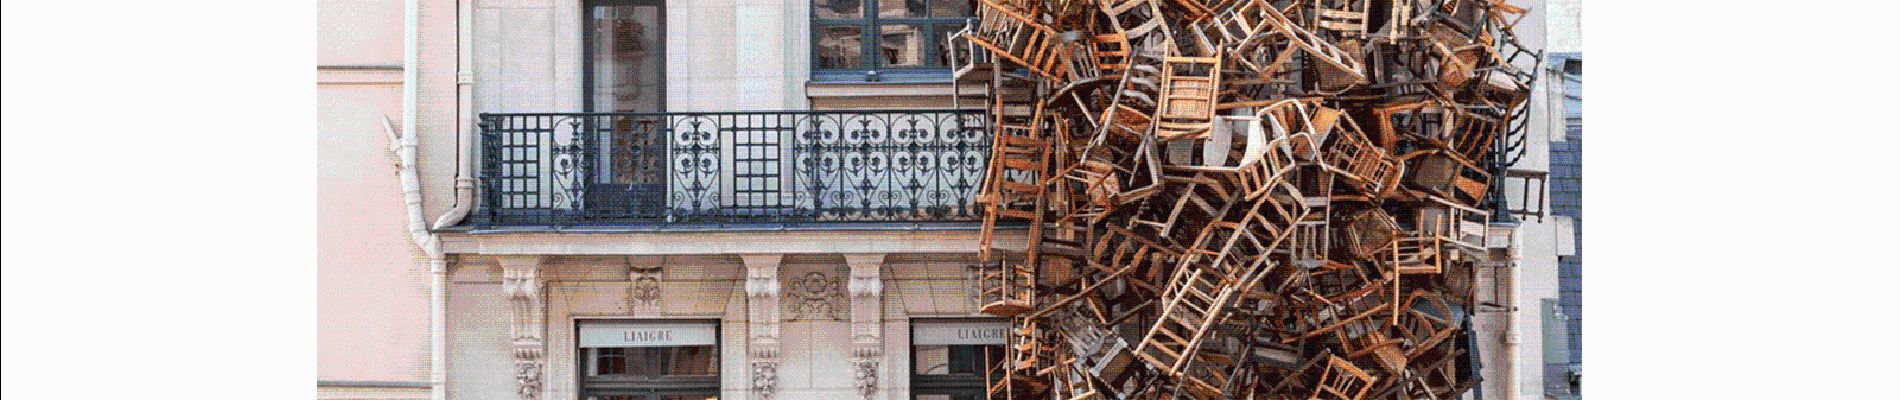 Point d'intérêt Paris - exposition temporaire chaises aux fenetres - Photo